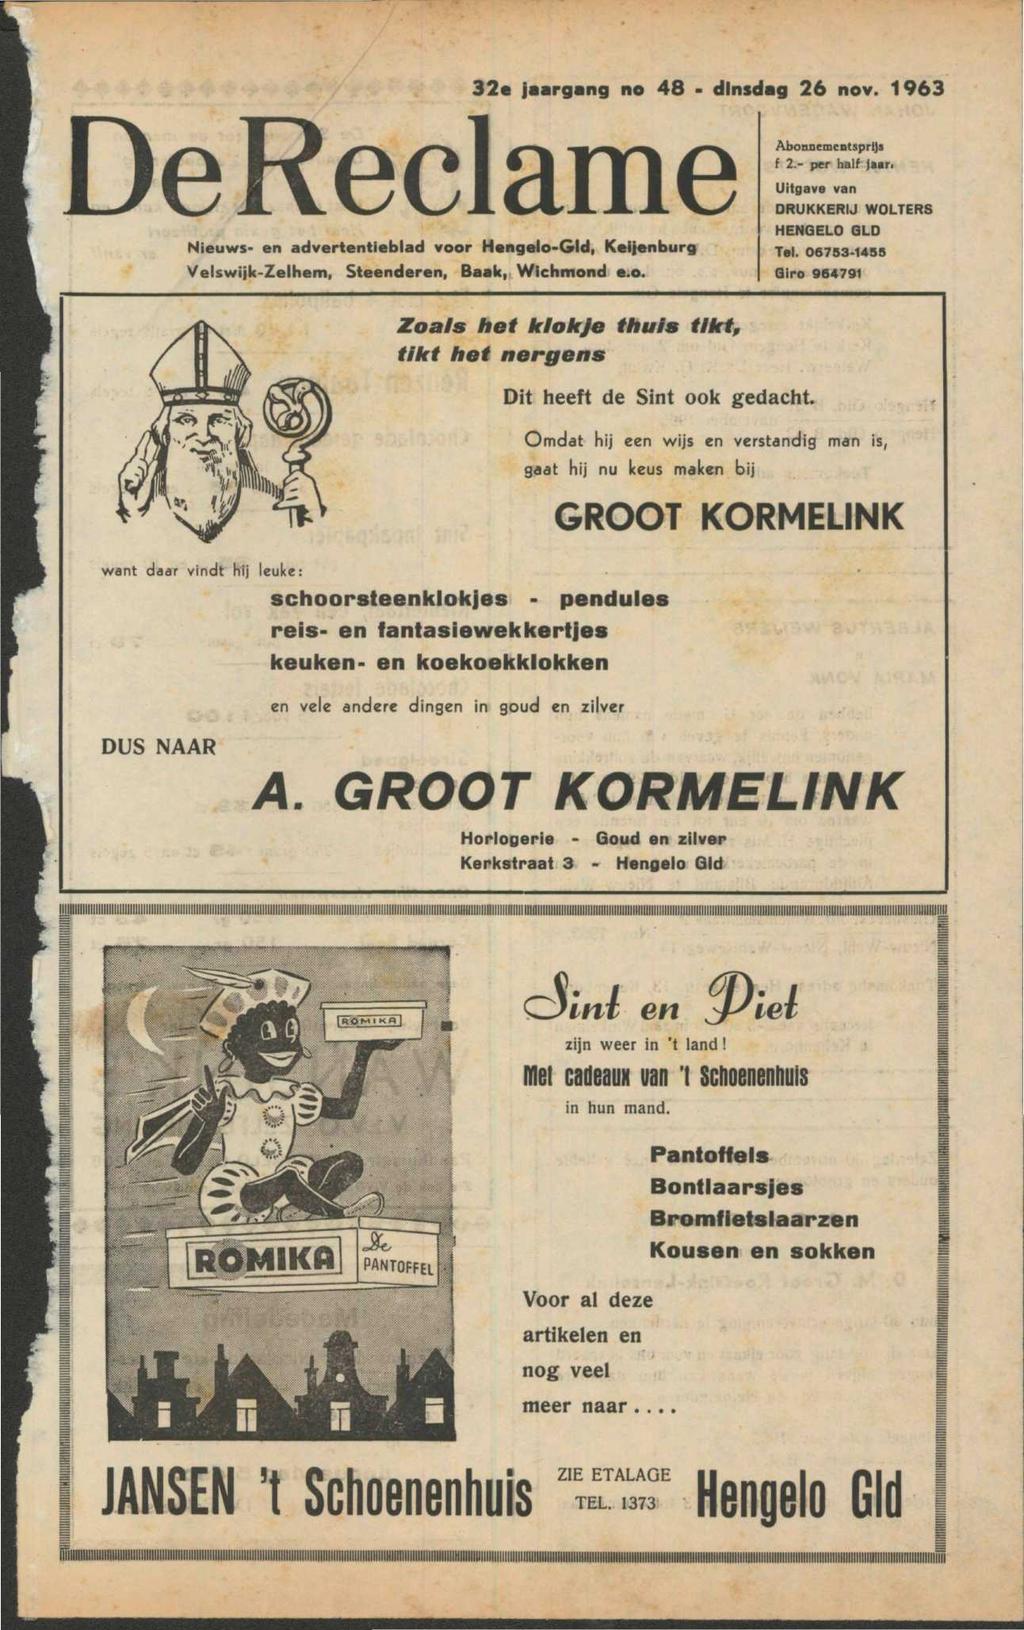 De Reclame Nieuws- en advertentieblad voor Hengelo-Gld, Keijenburg Velswijk-Zelhem, Steenderen, Baak, Wichmond e.o. 32e jaargang no 48 dinsdag 26 nov. 1963 Abonnementsprijs f 2.